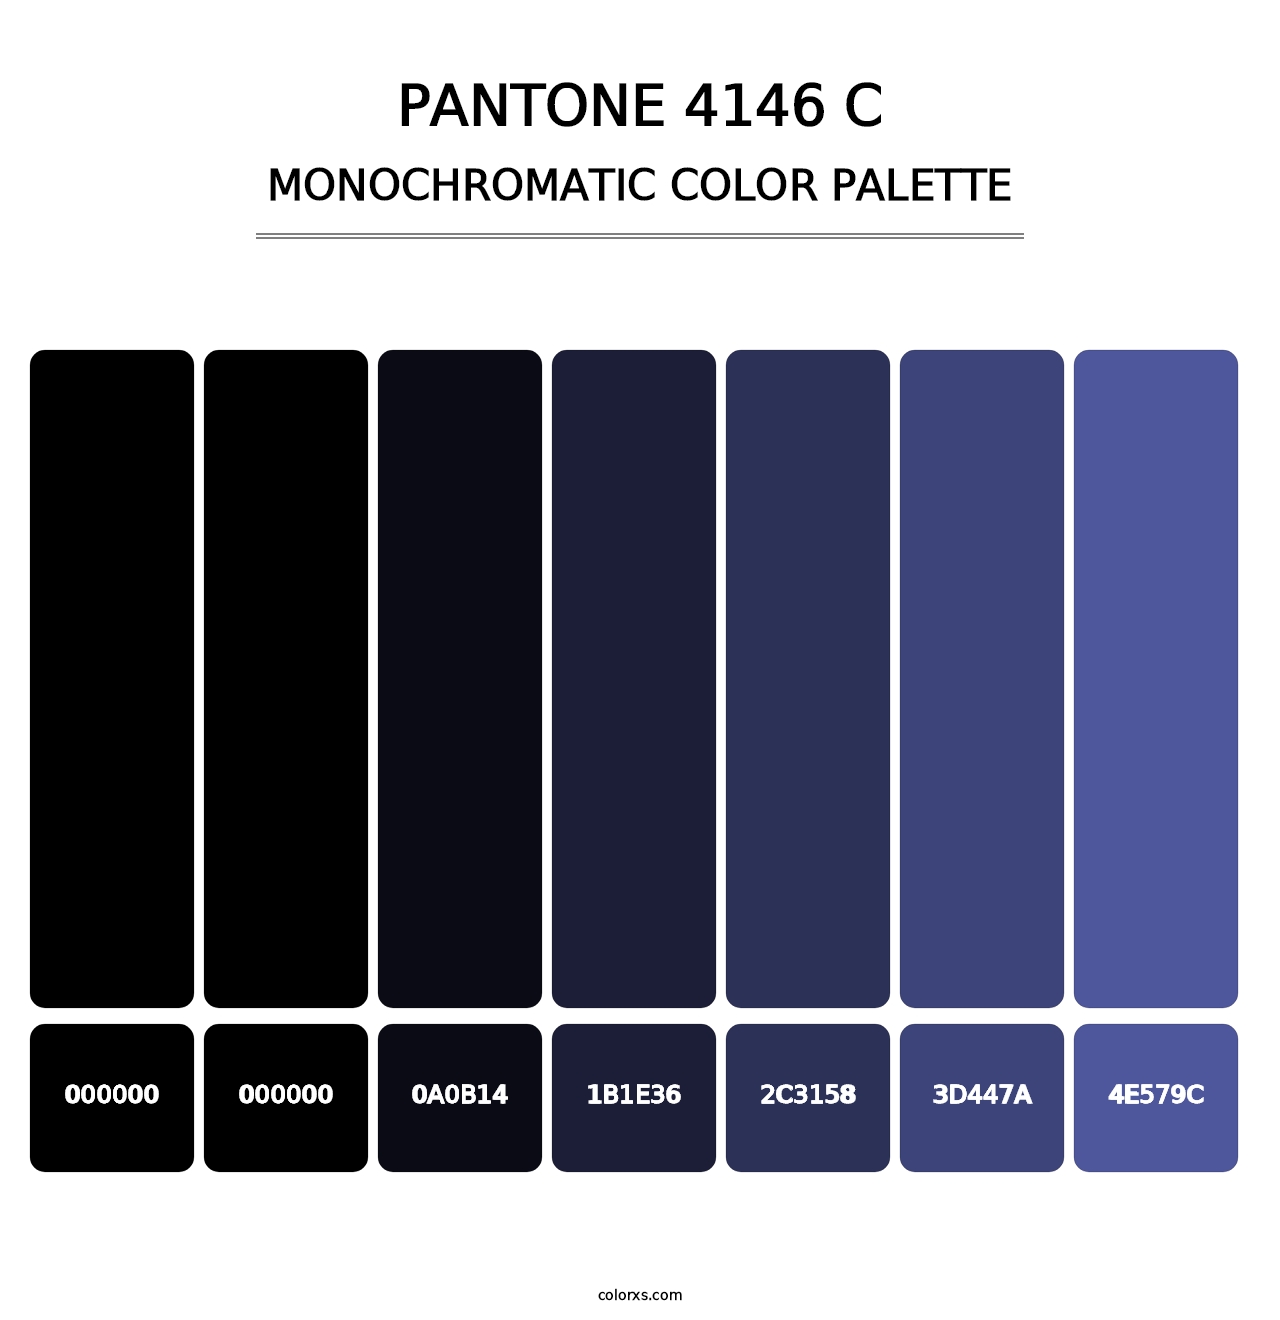 PANTONE 4146 C - Monochromatic Color Palette